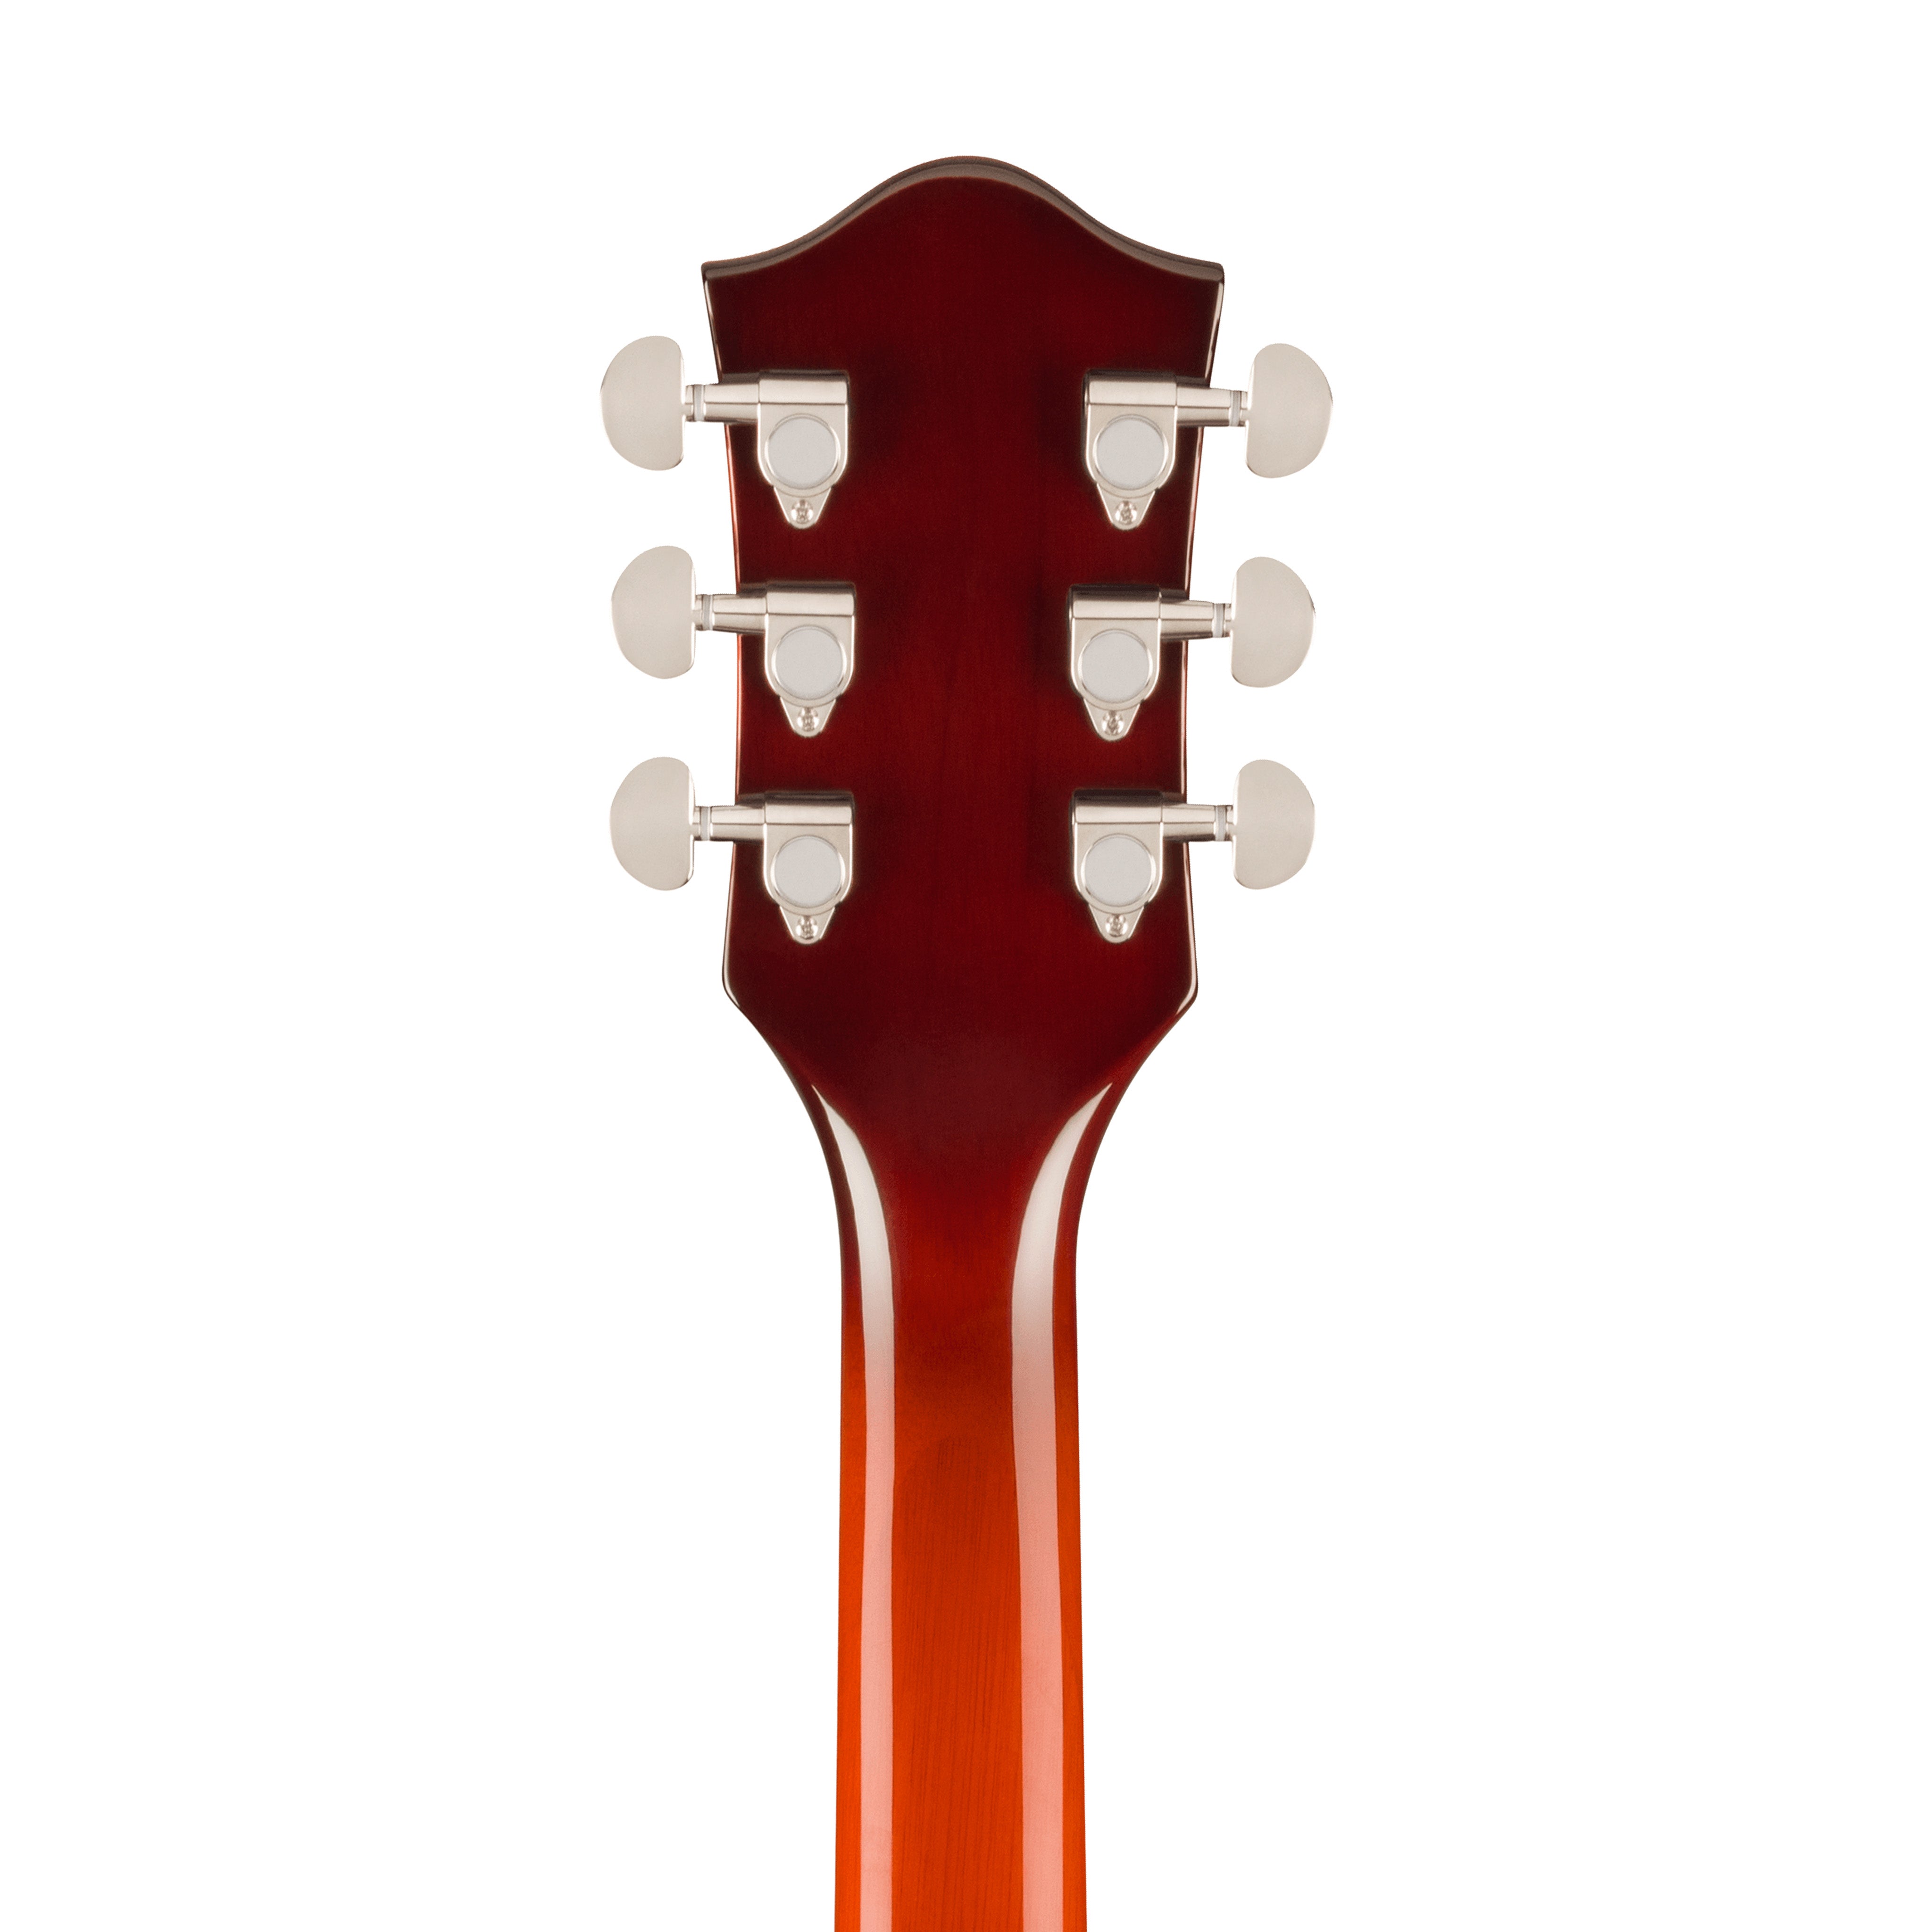 Gretsch G2622 Streamliner Center Block Double-Cut Electric Guitar, Fireburst